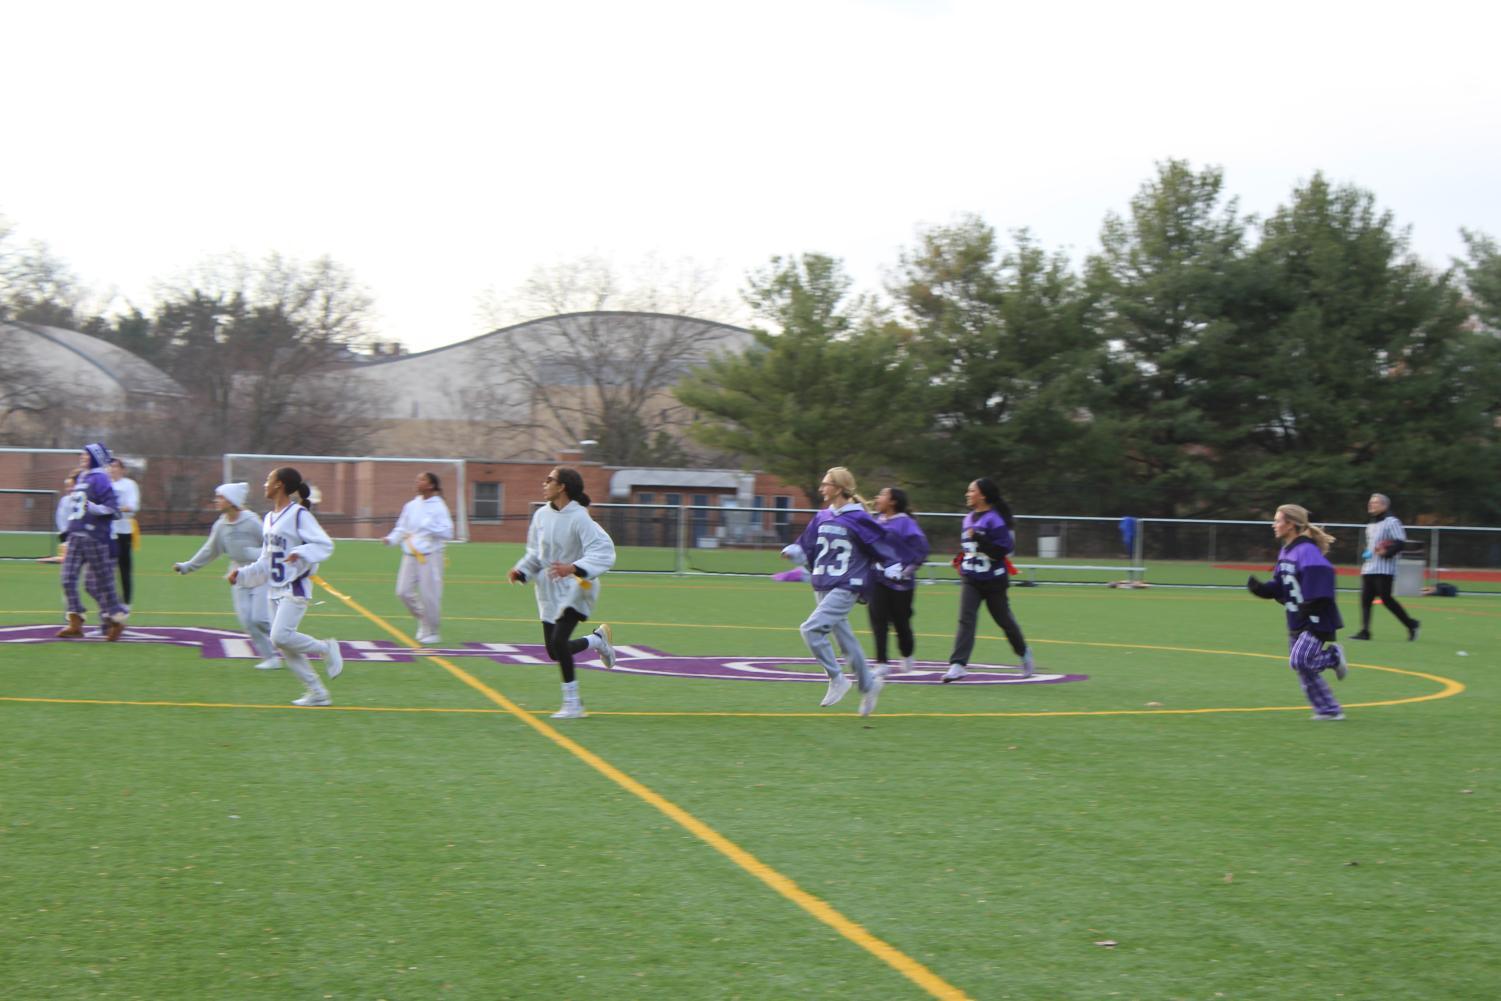 Juniors and seniors running down the field.